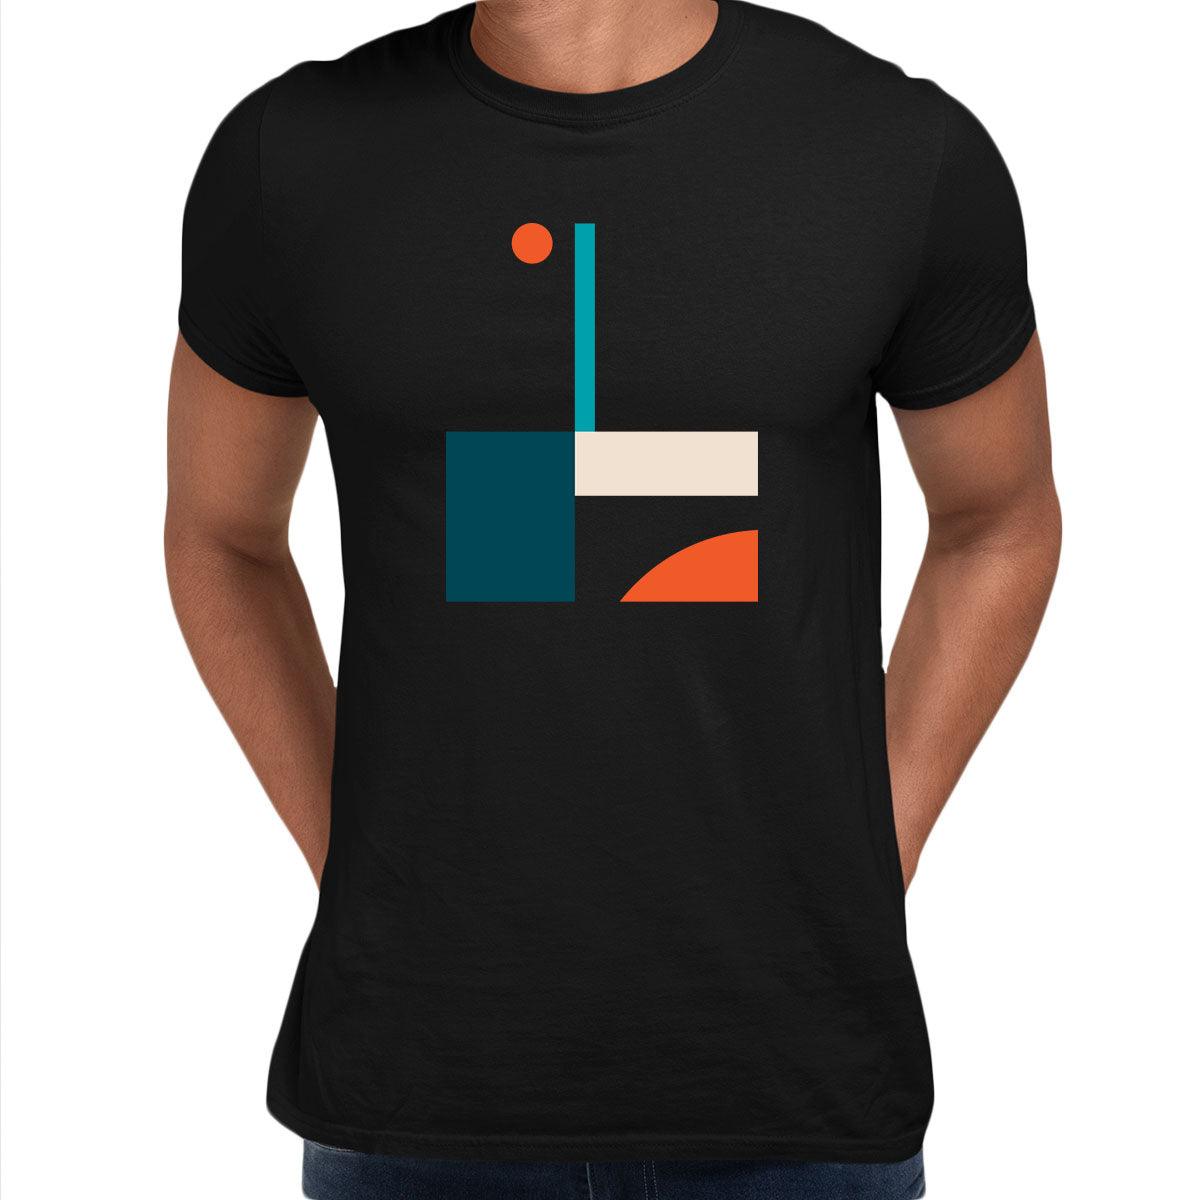 Basic Shapes Art Print T-Shirt Abstract Design Short Sleeve Round Neck Funny Unisex T-shirt - Kuzi Tees